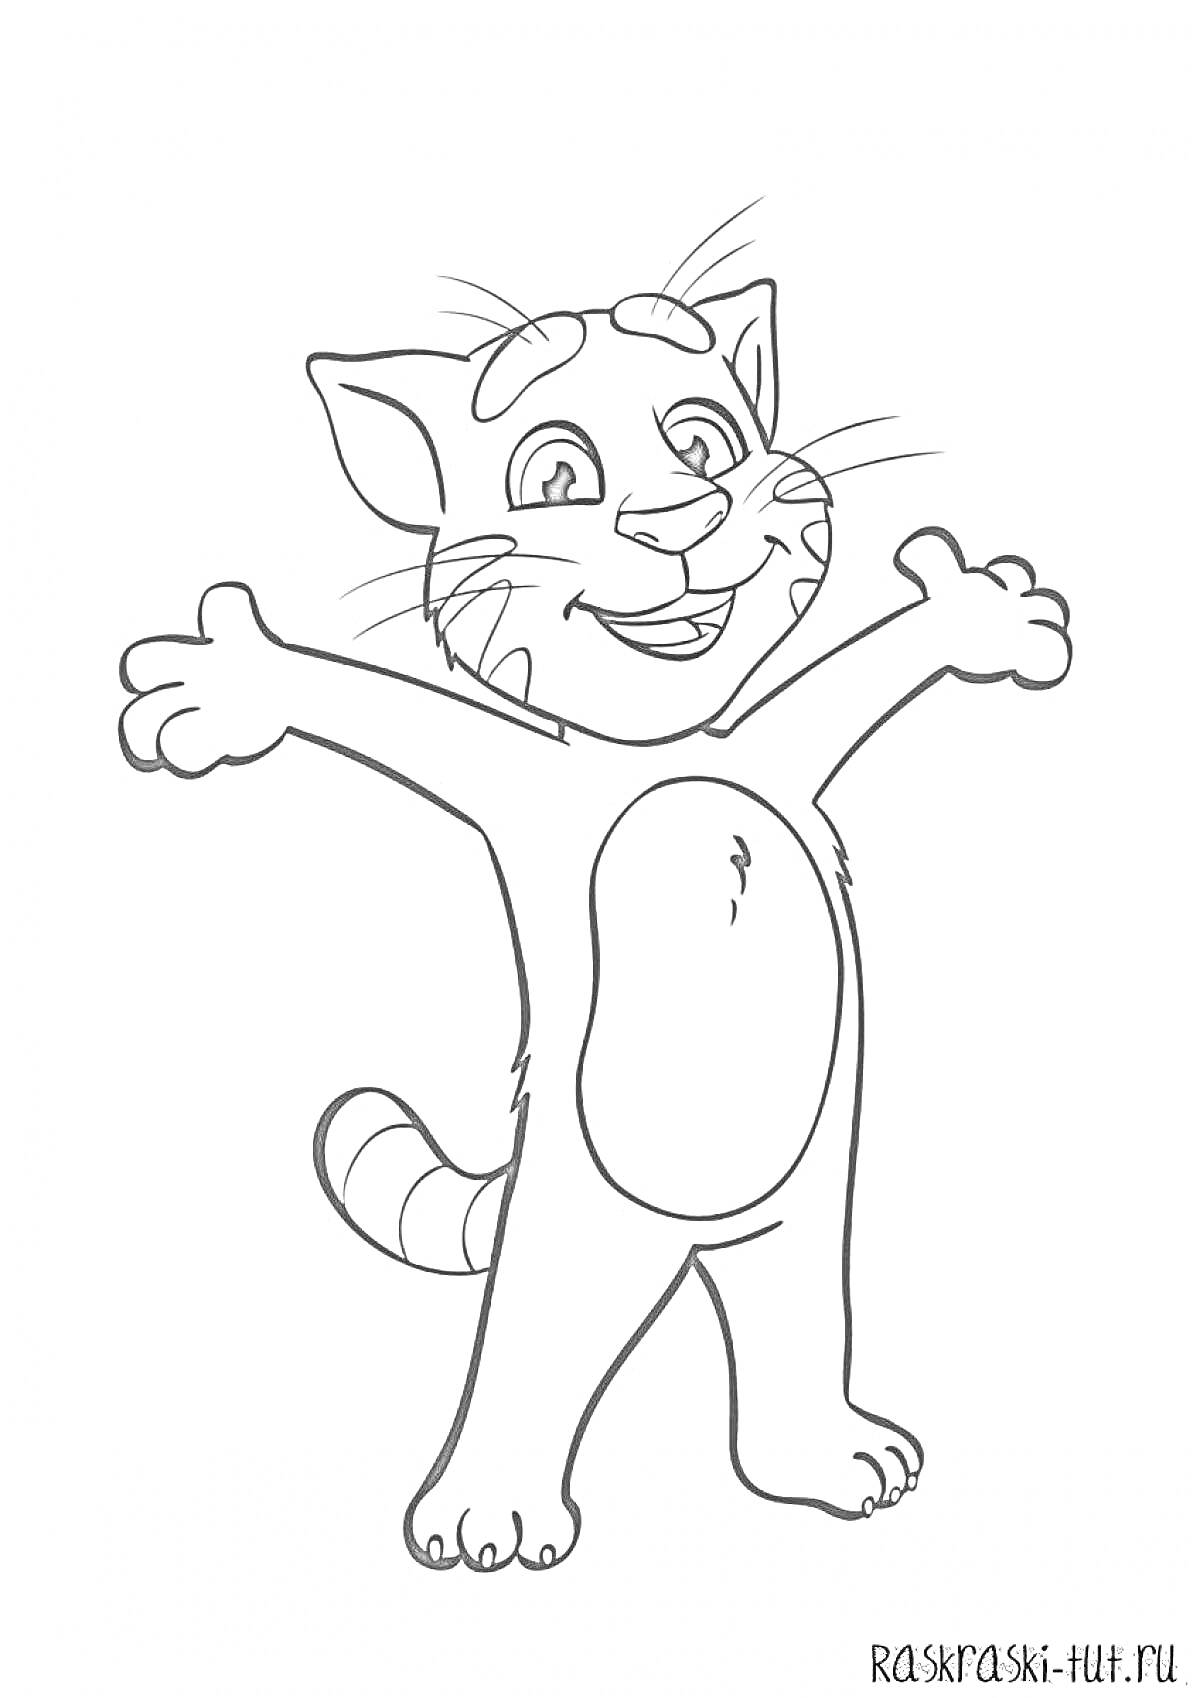 Раскраска Кот с вытянутыми руками и полосатым хвостом